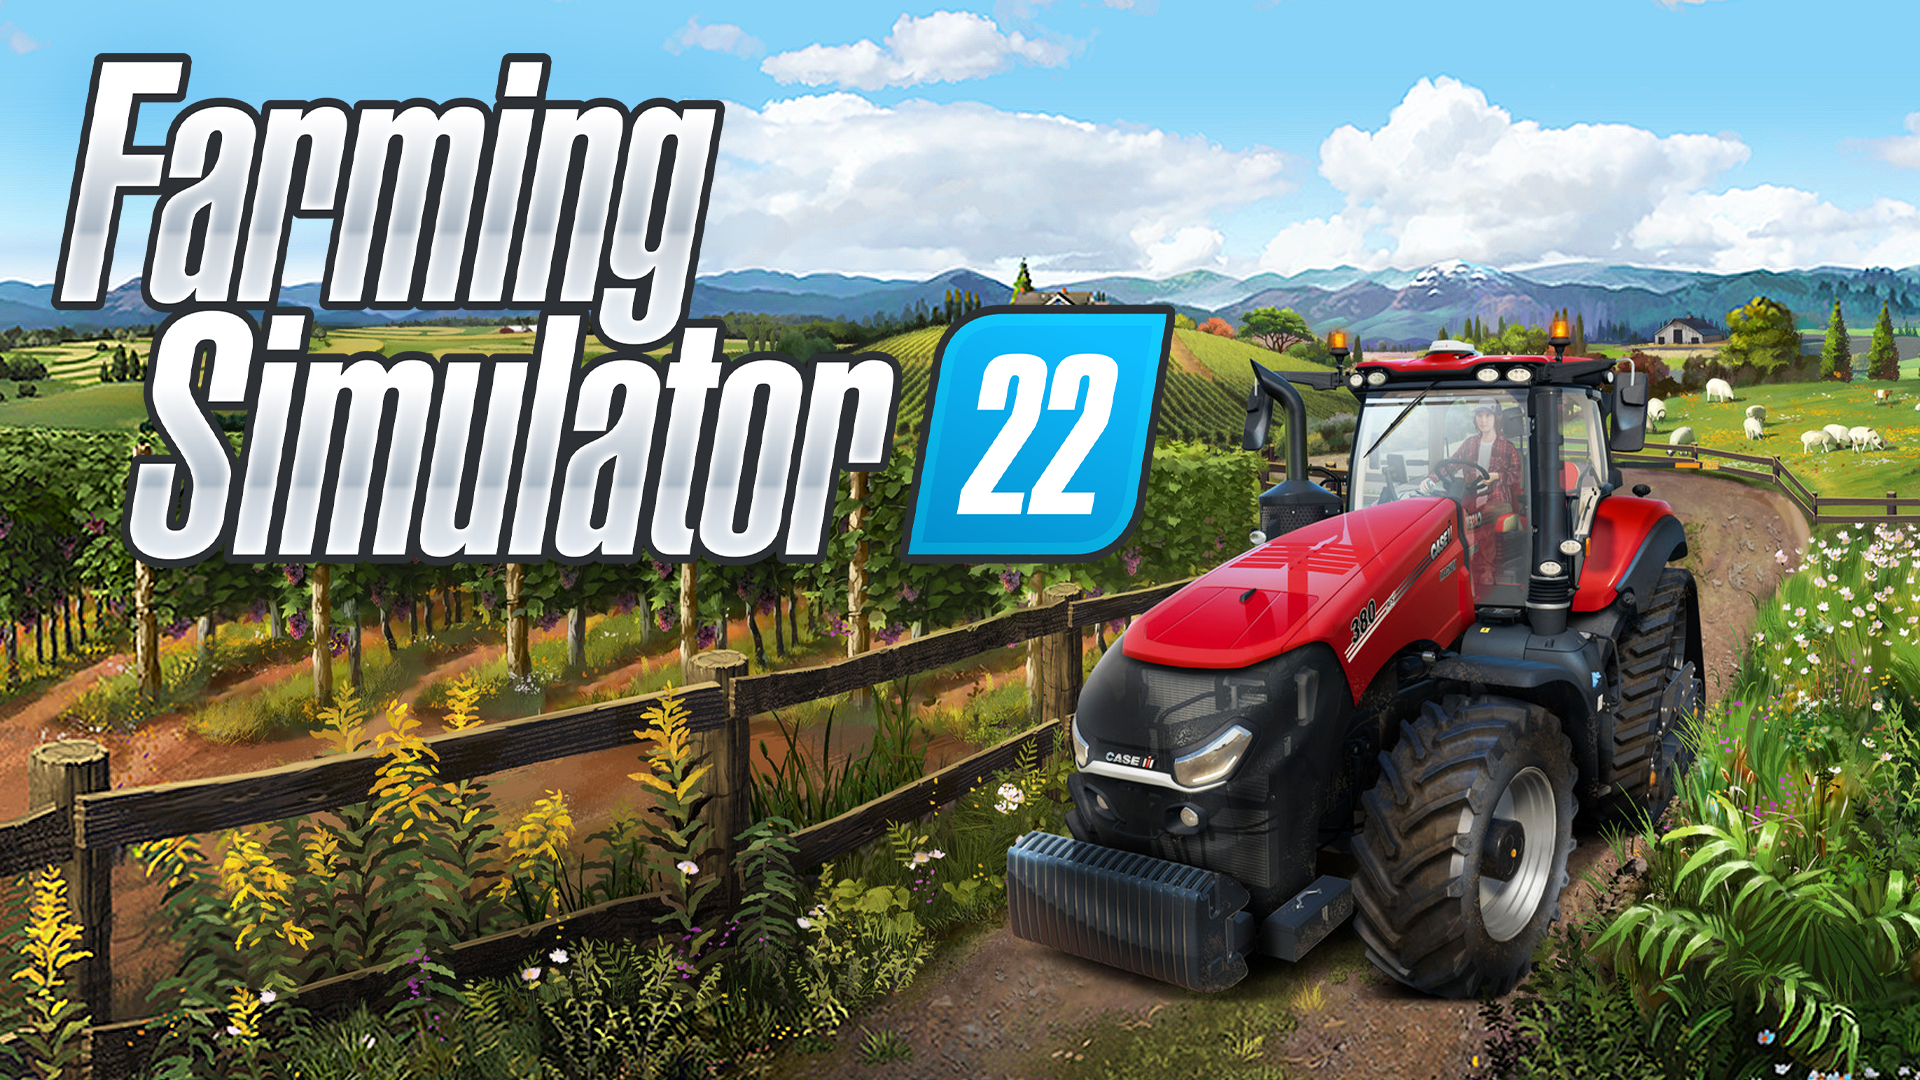 farming simulator 17 steam key